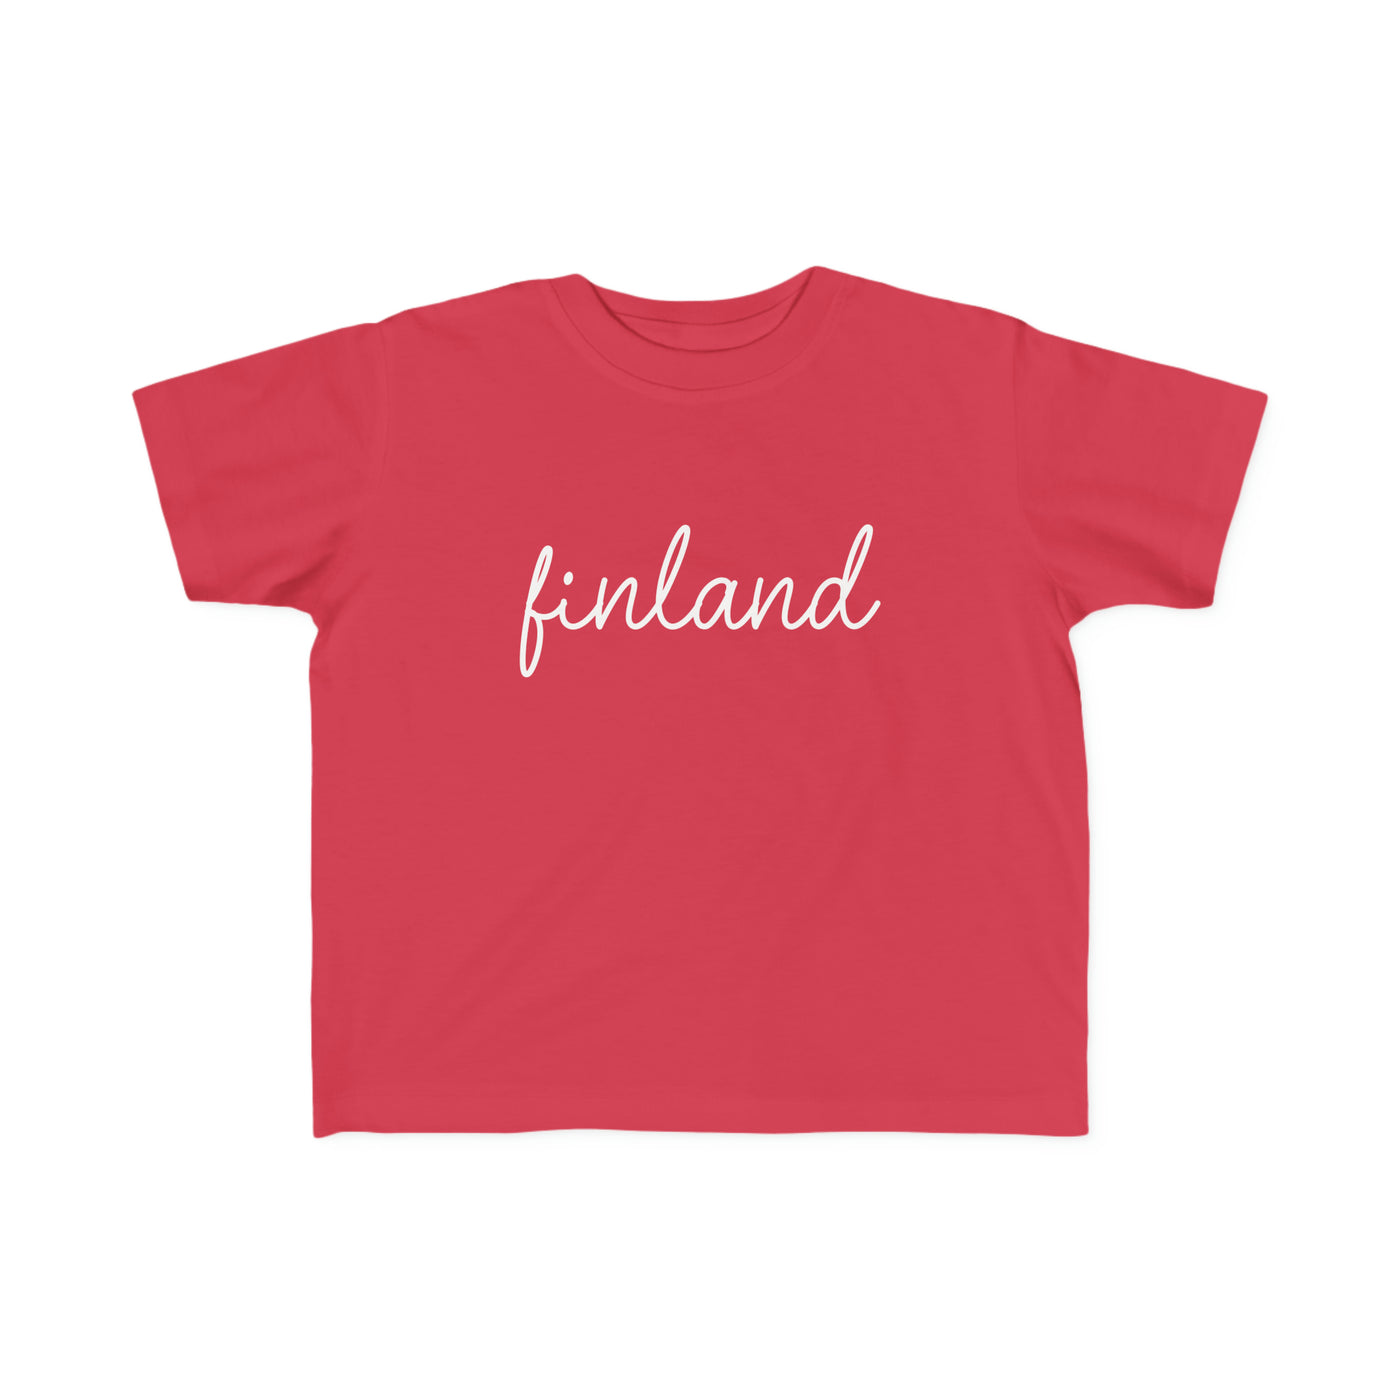 Finland Toddler Tee